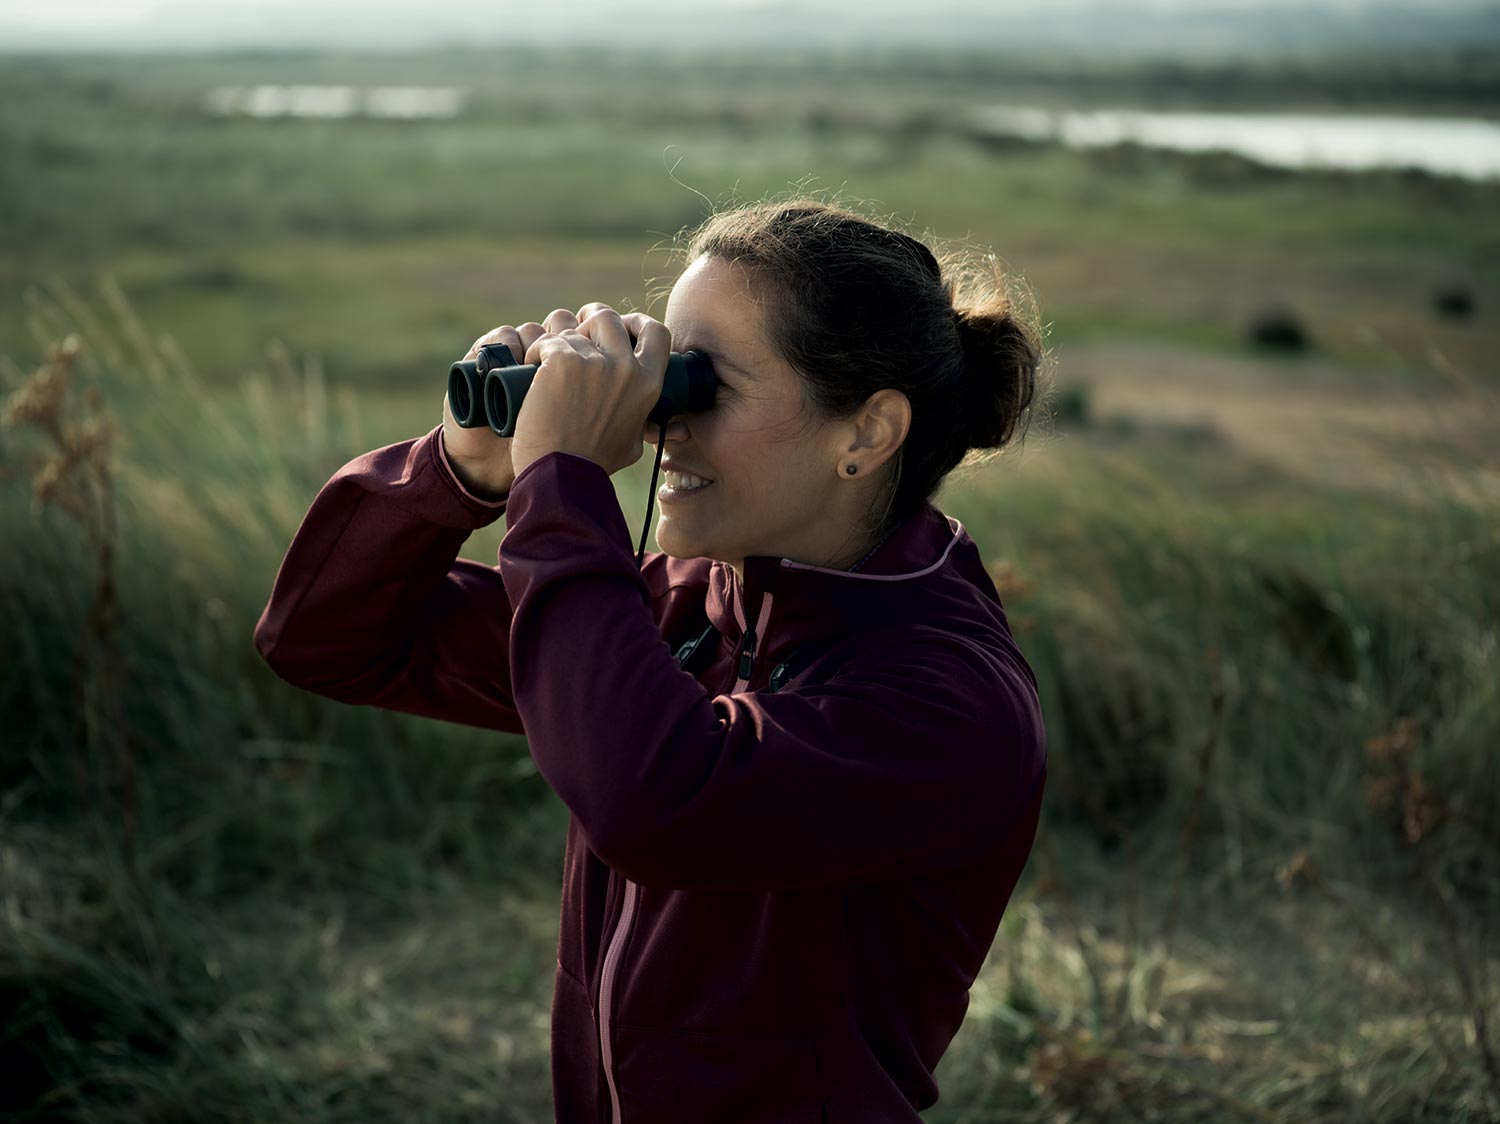 Swarovski Optik Ferngläser: bringen Dich näher zur Natur